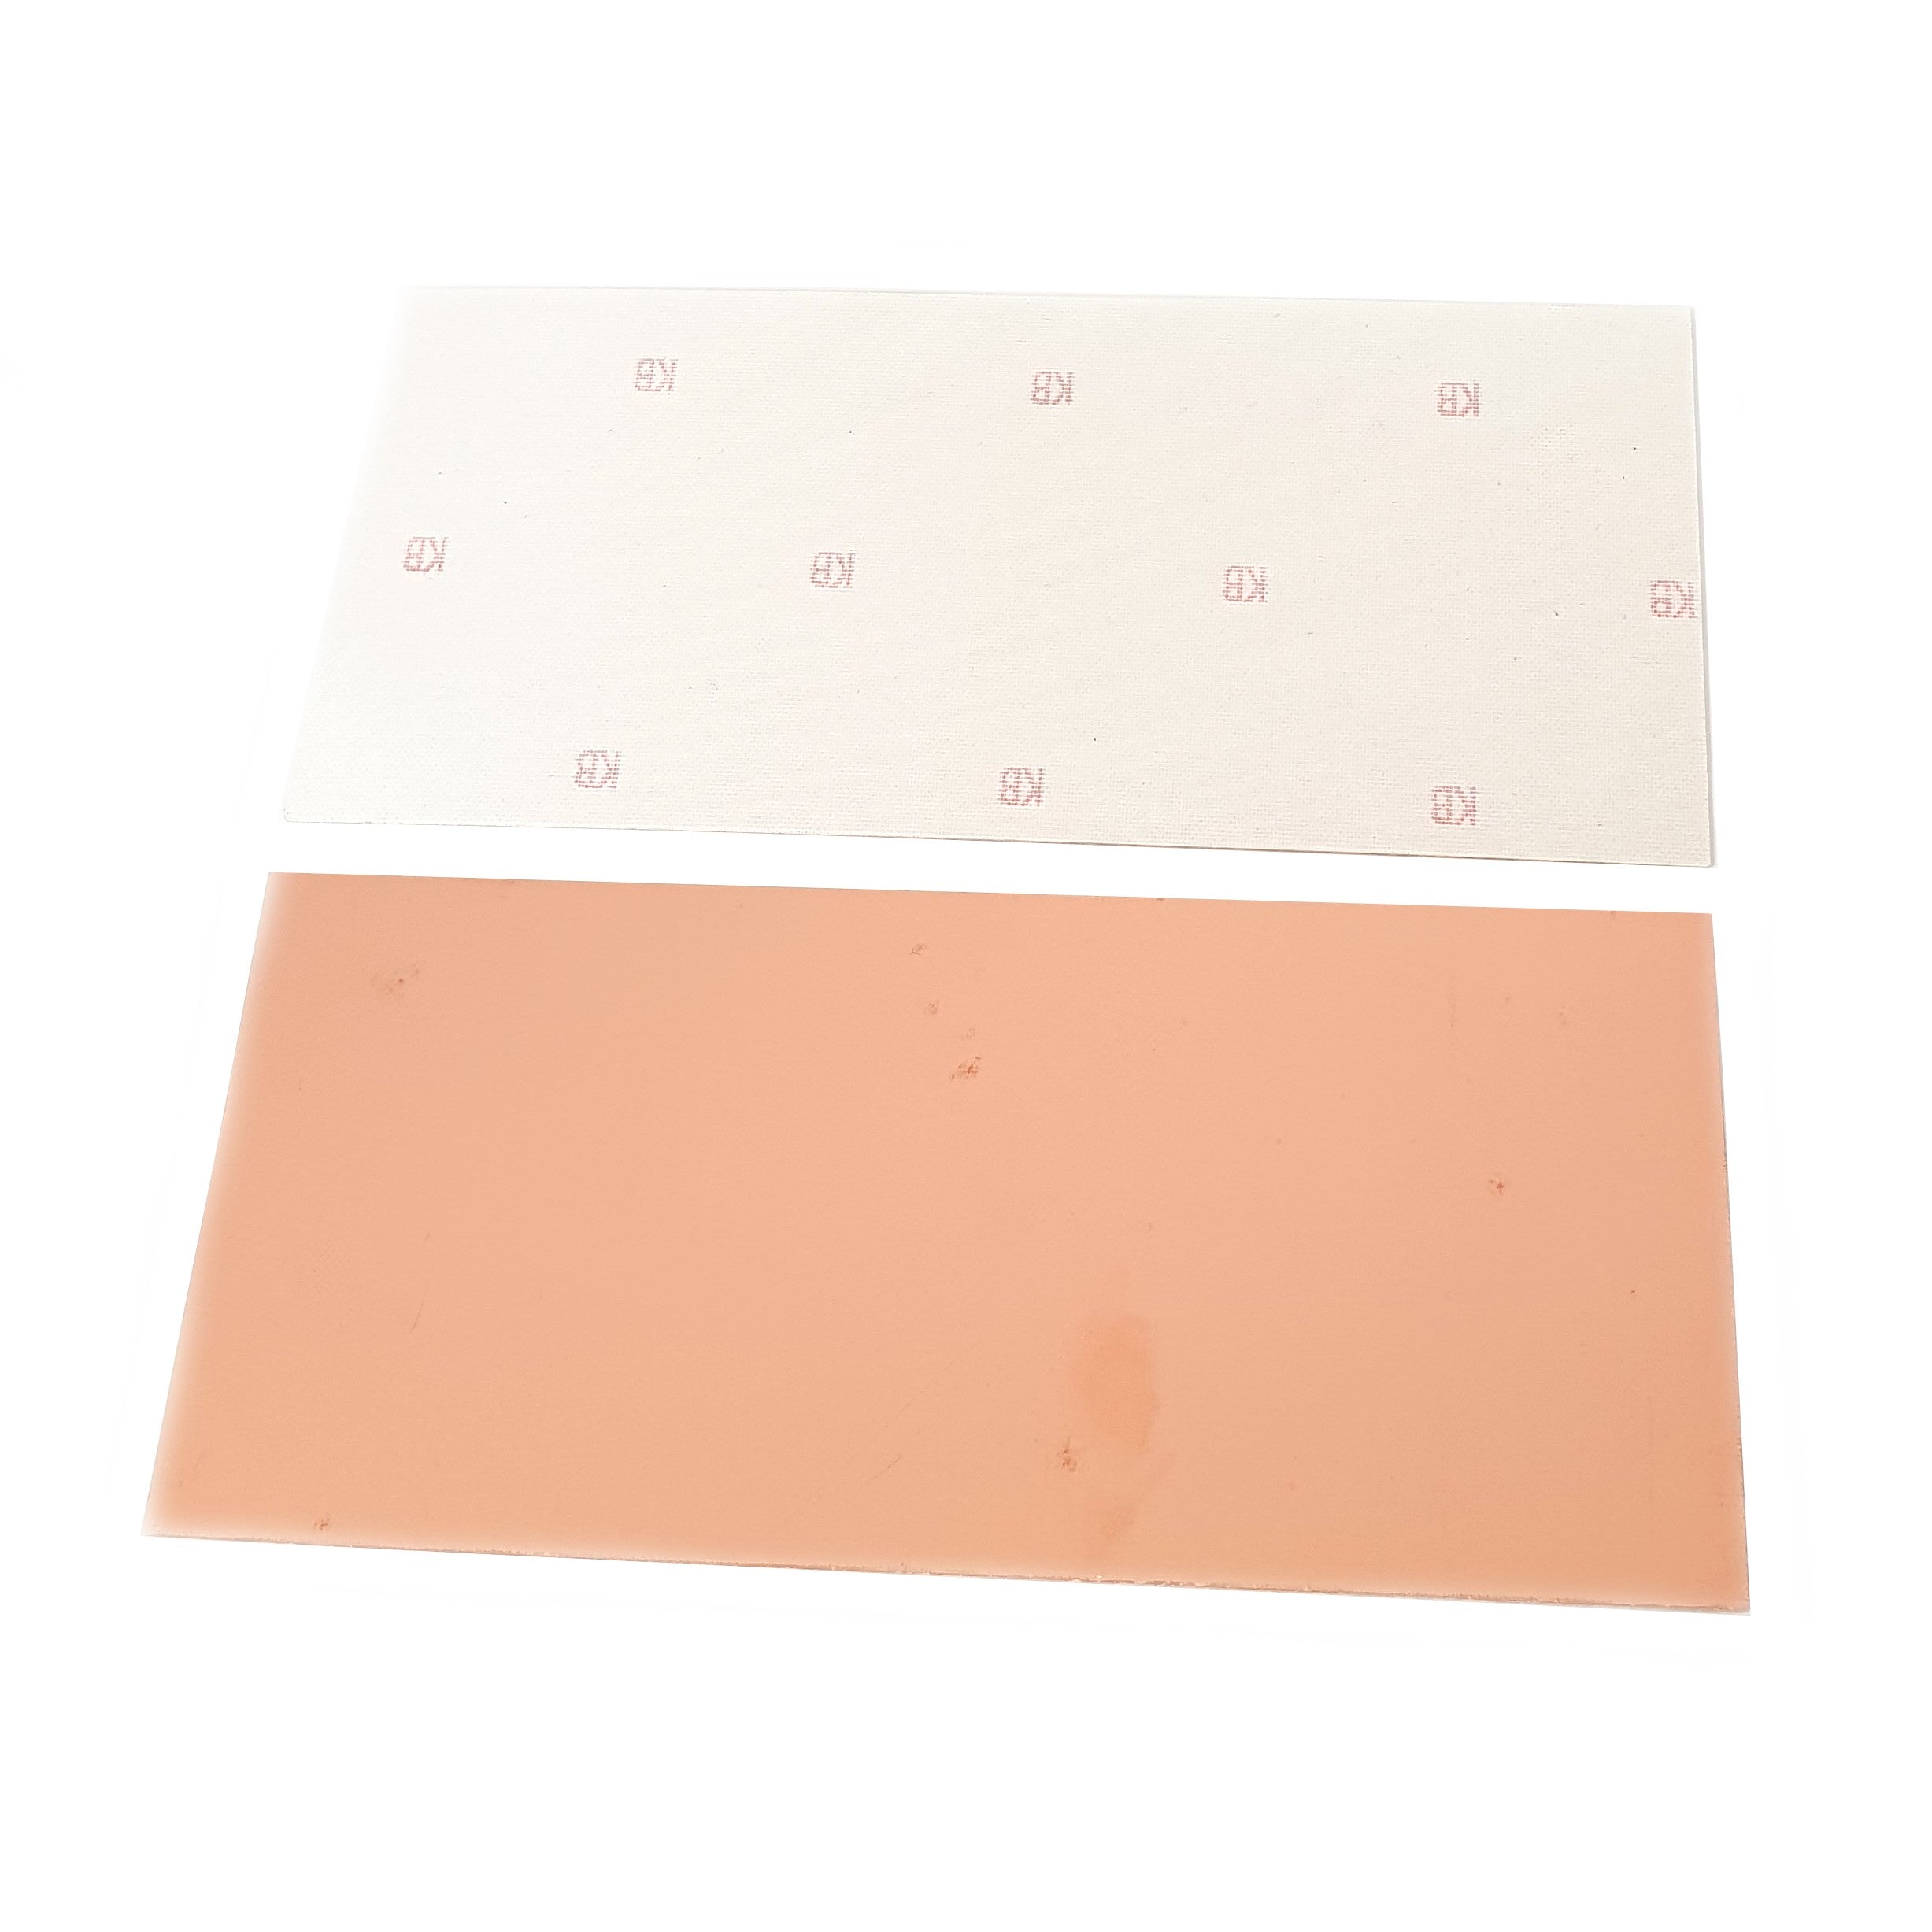 Single Sided Copper Clad Board 233x220mm